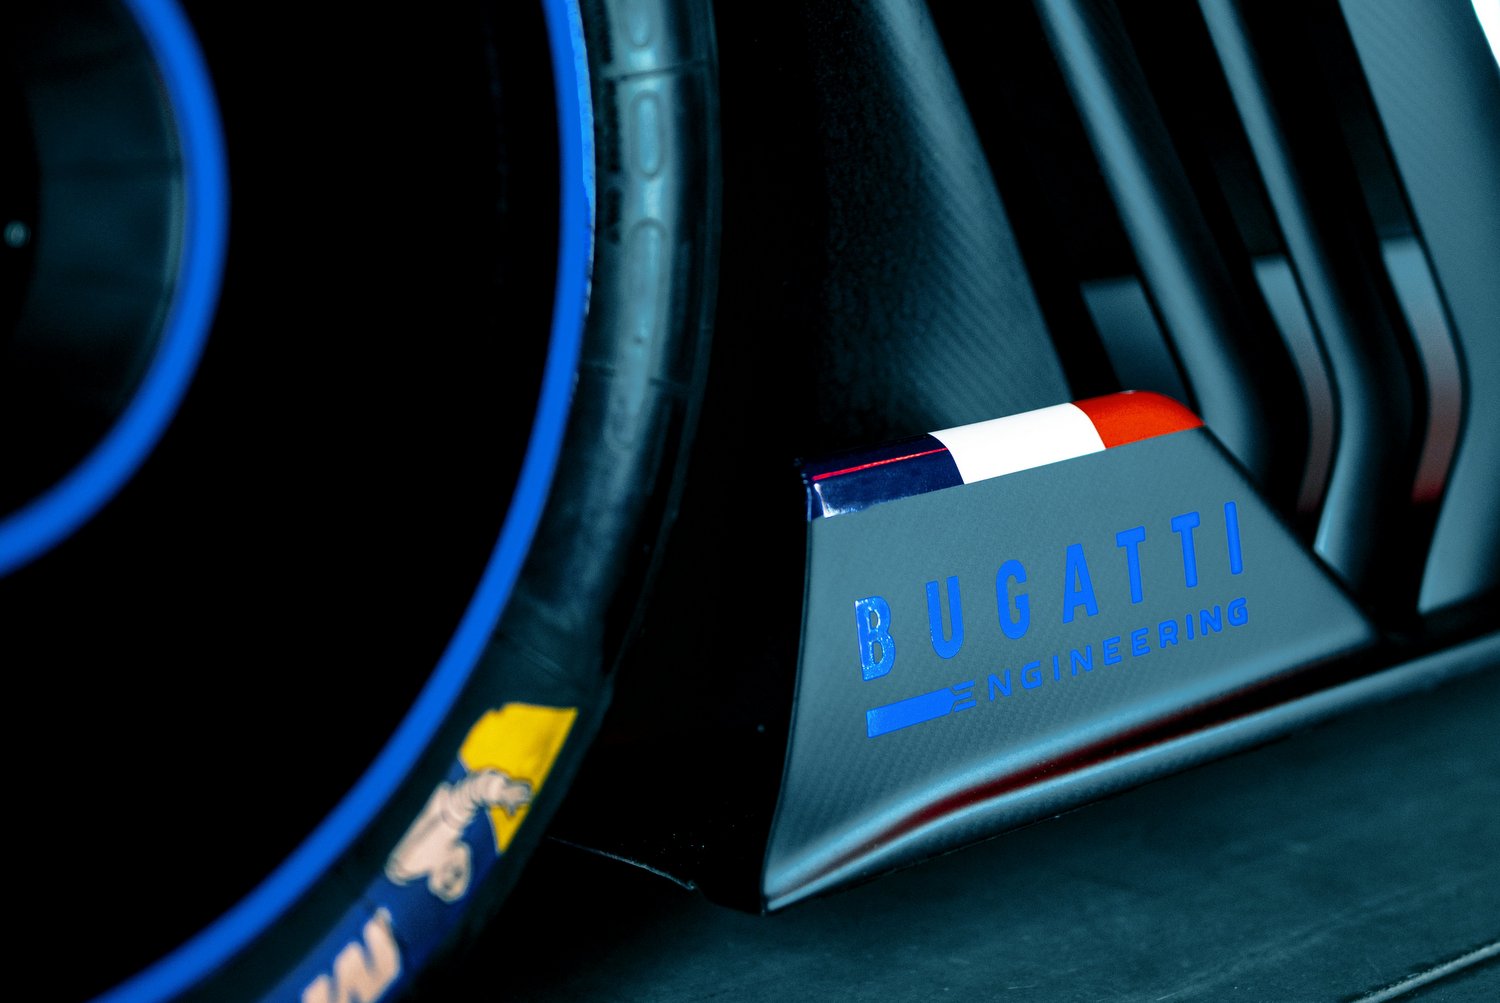 Libabőrös burkolat teszi áramvonalasabbá a Bugatti versenyautóját 9